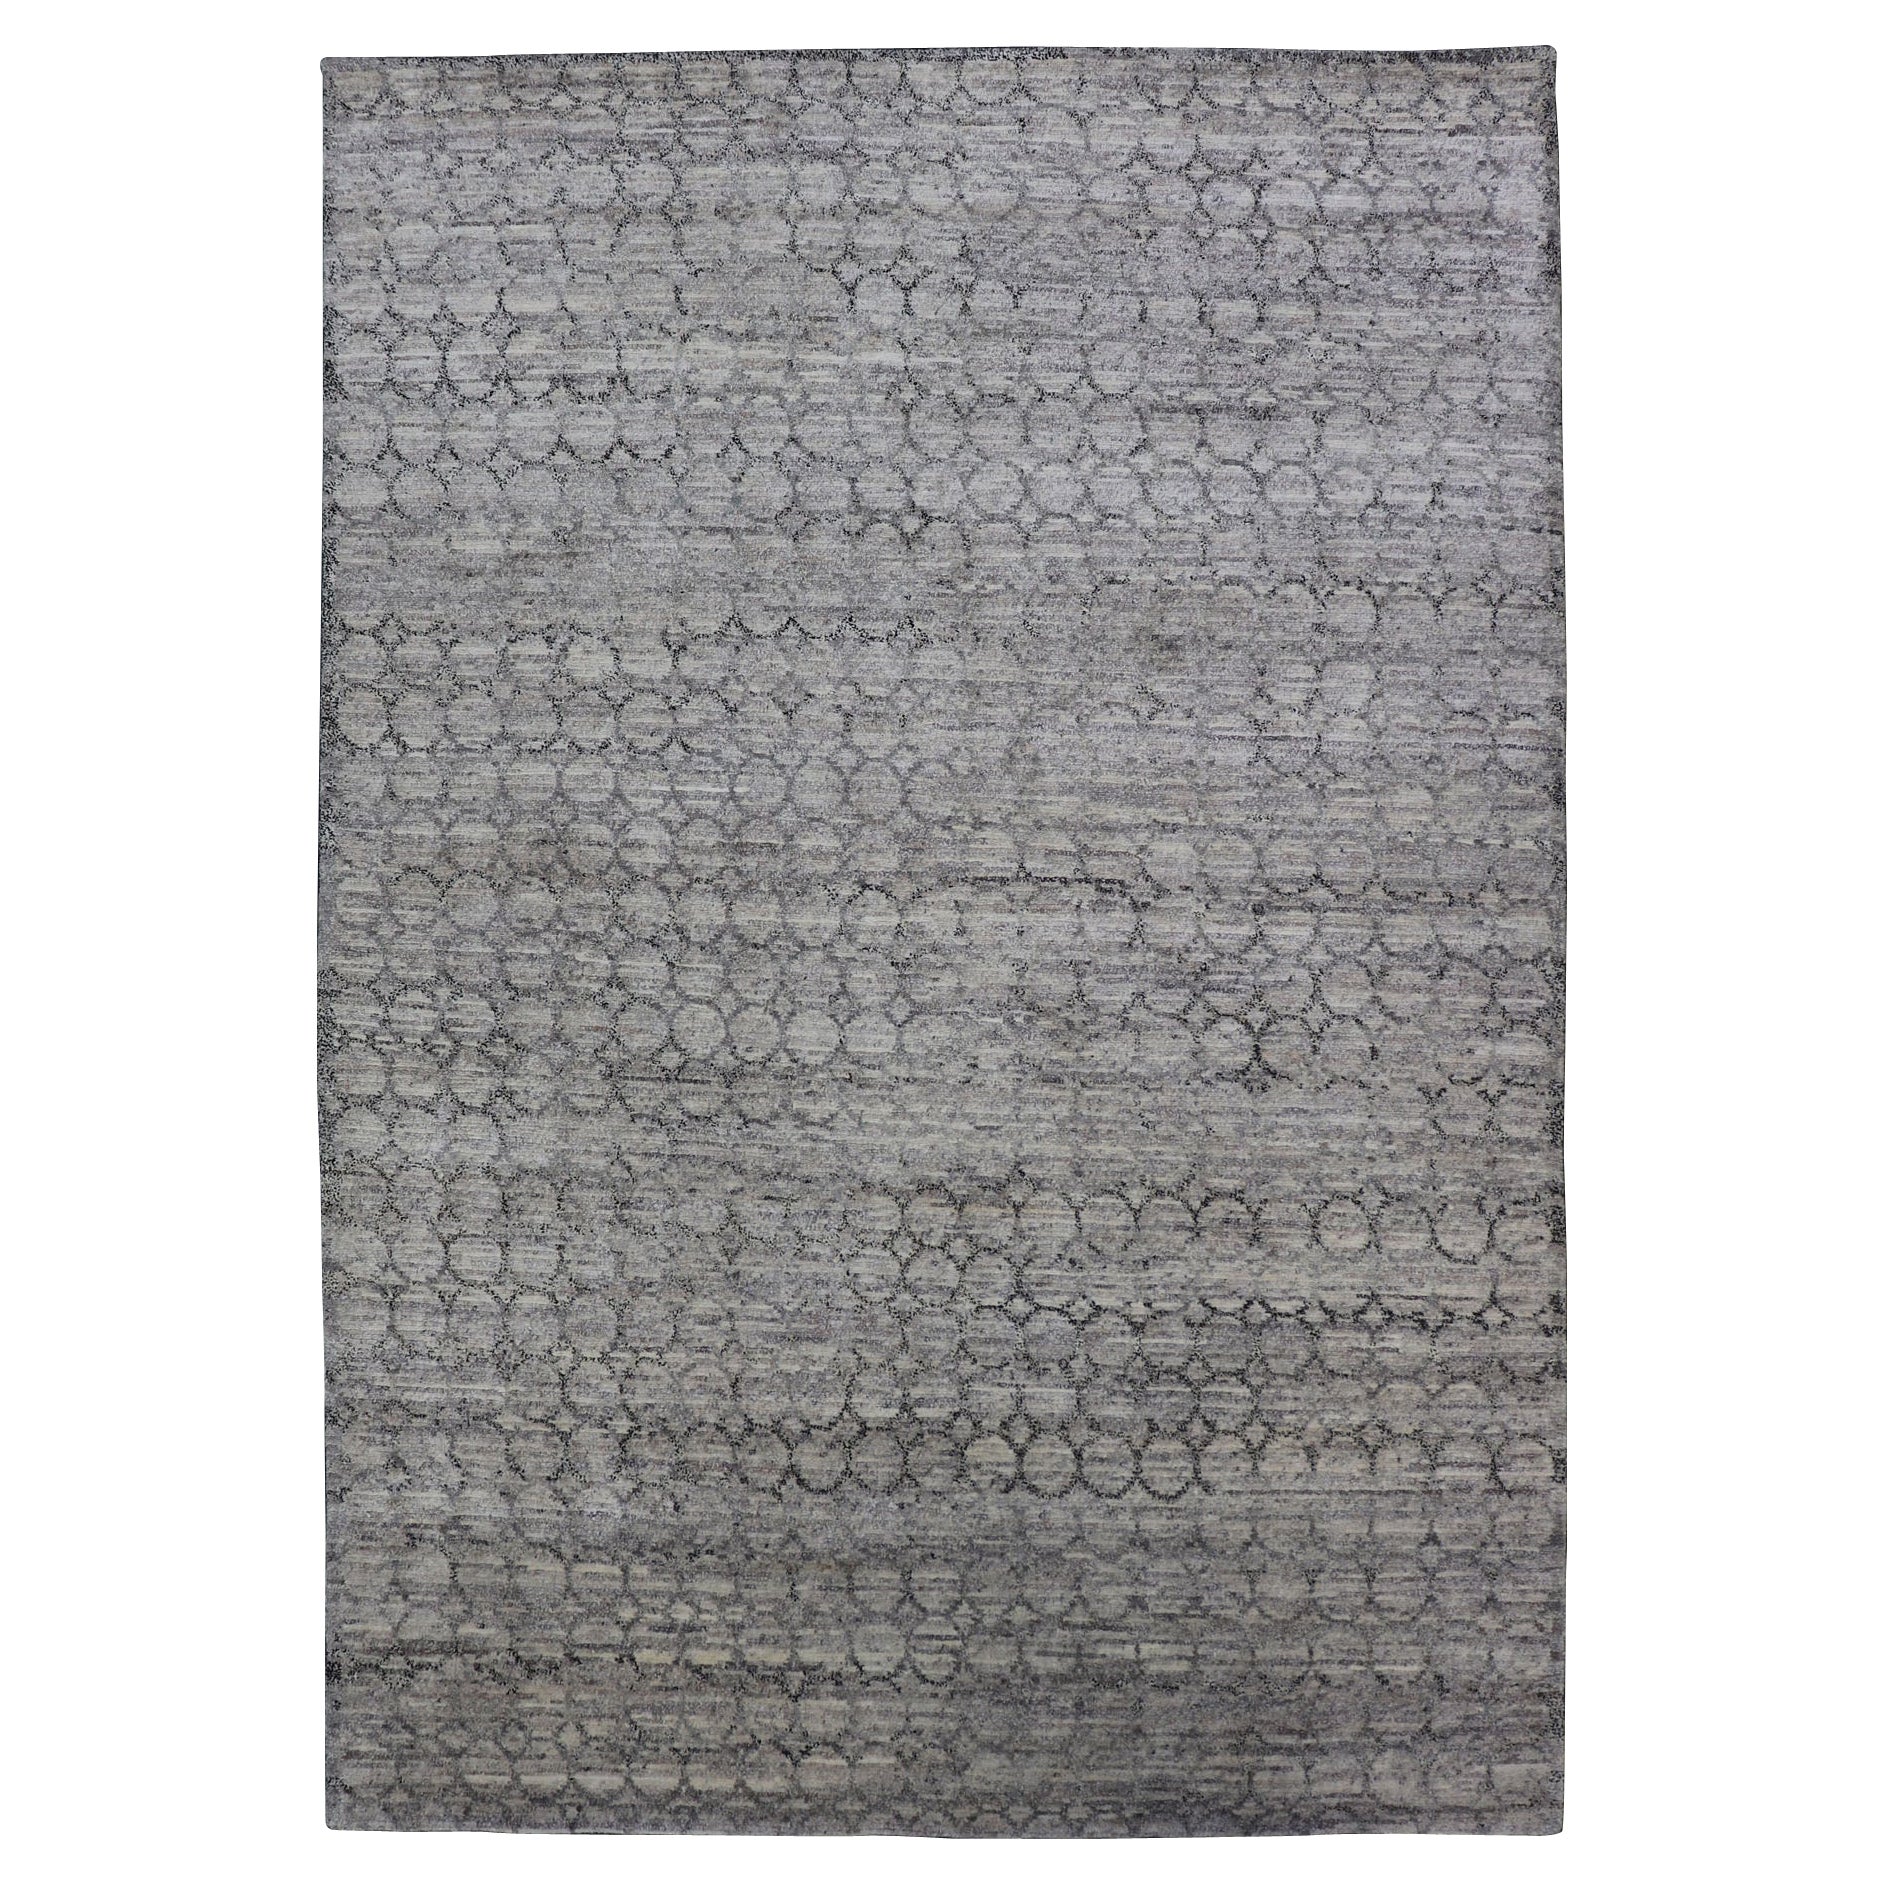 Tapis moderne gris clair avec motif de chaîne sur toute sa surface en gris foncé